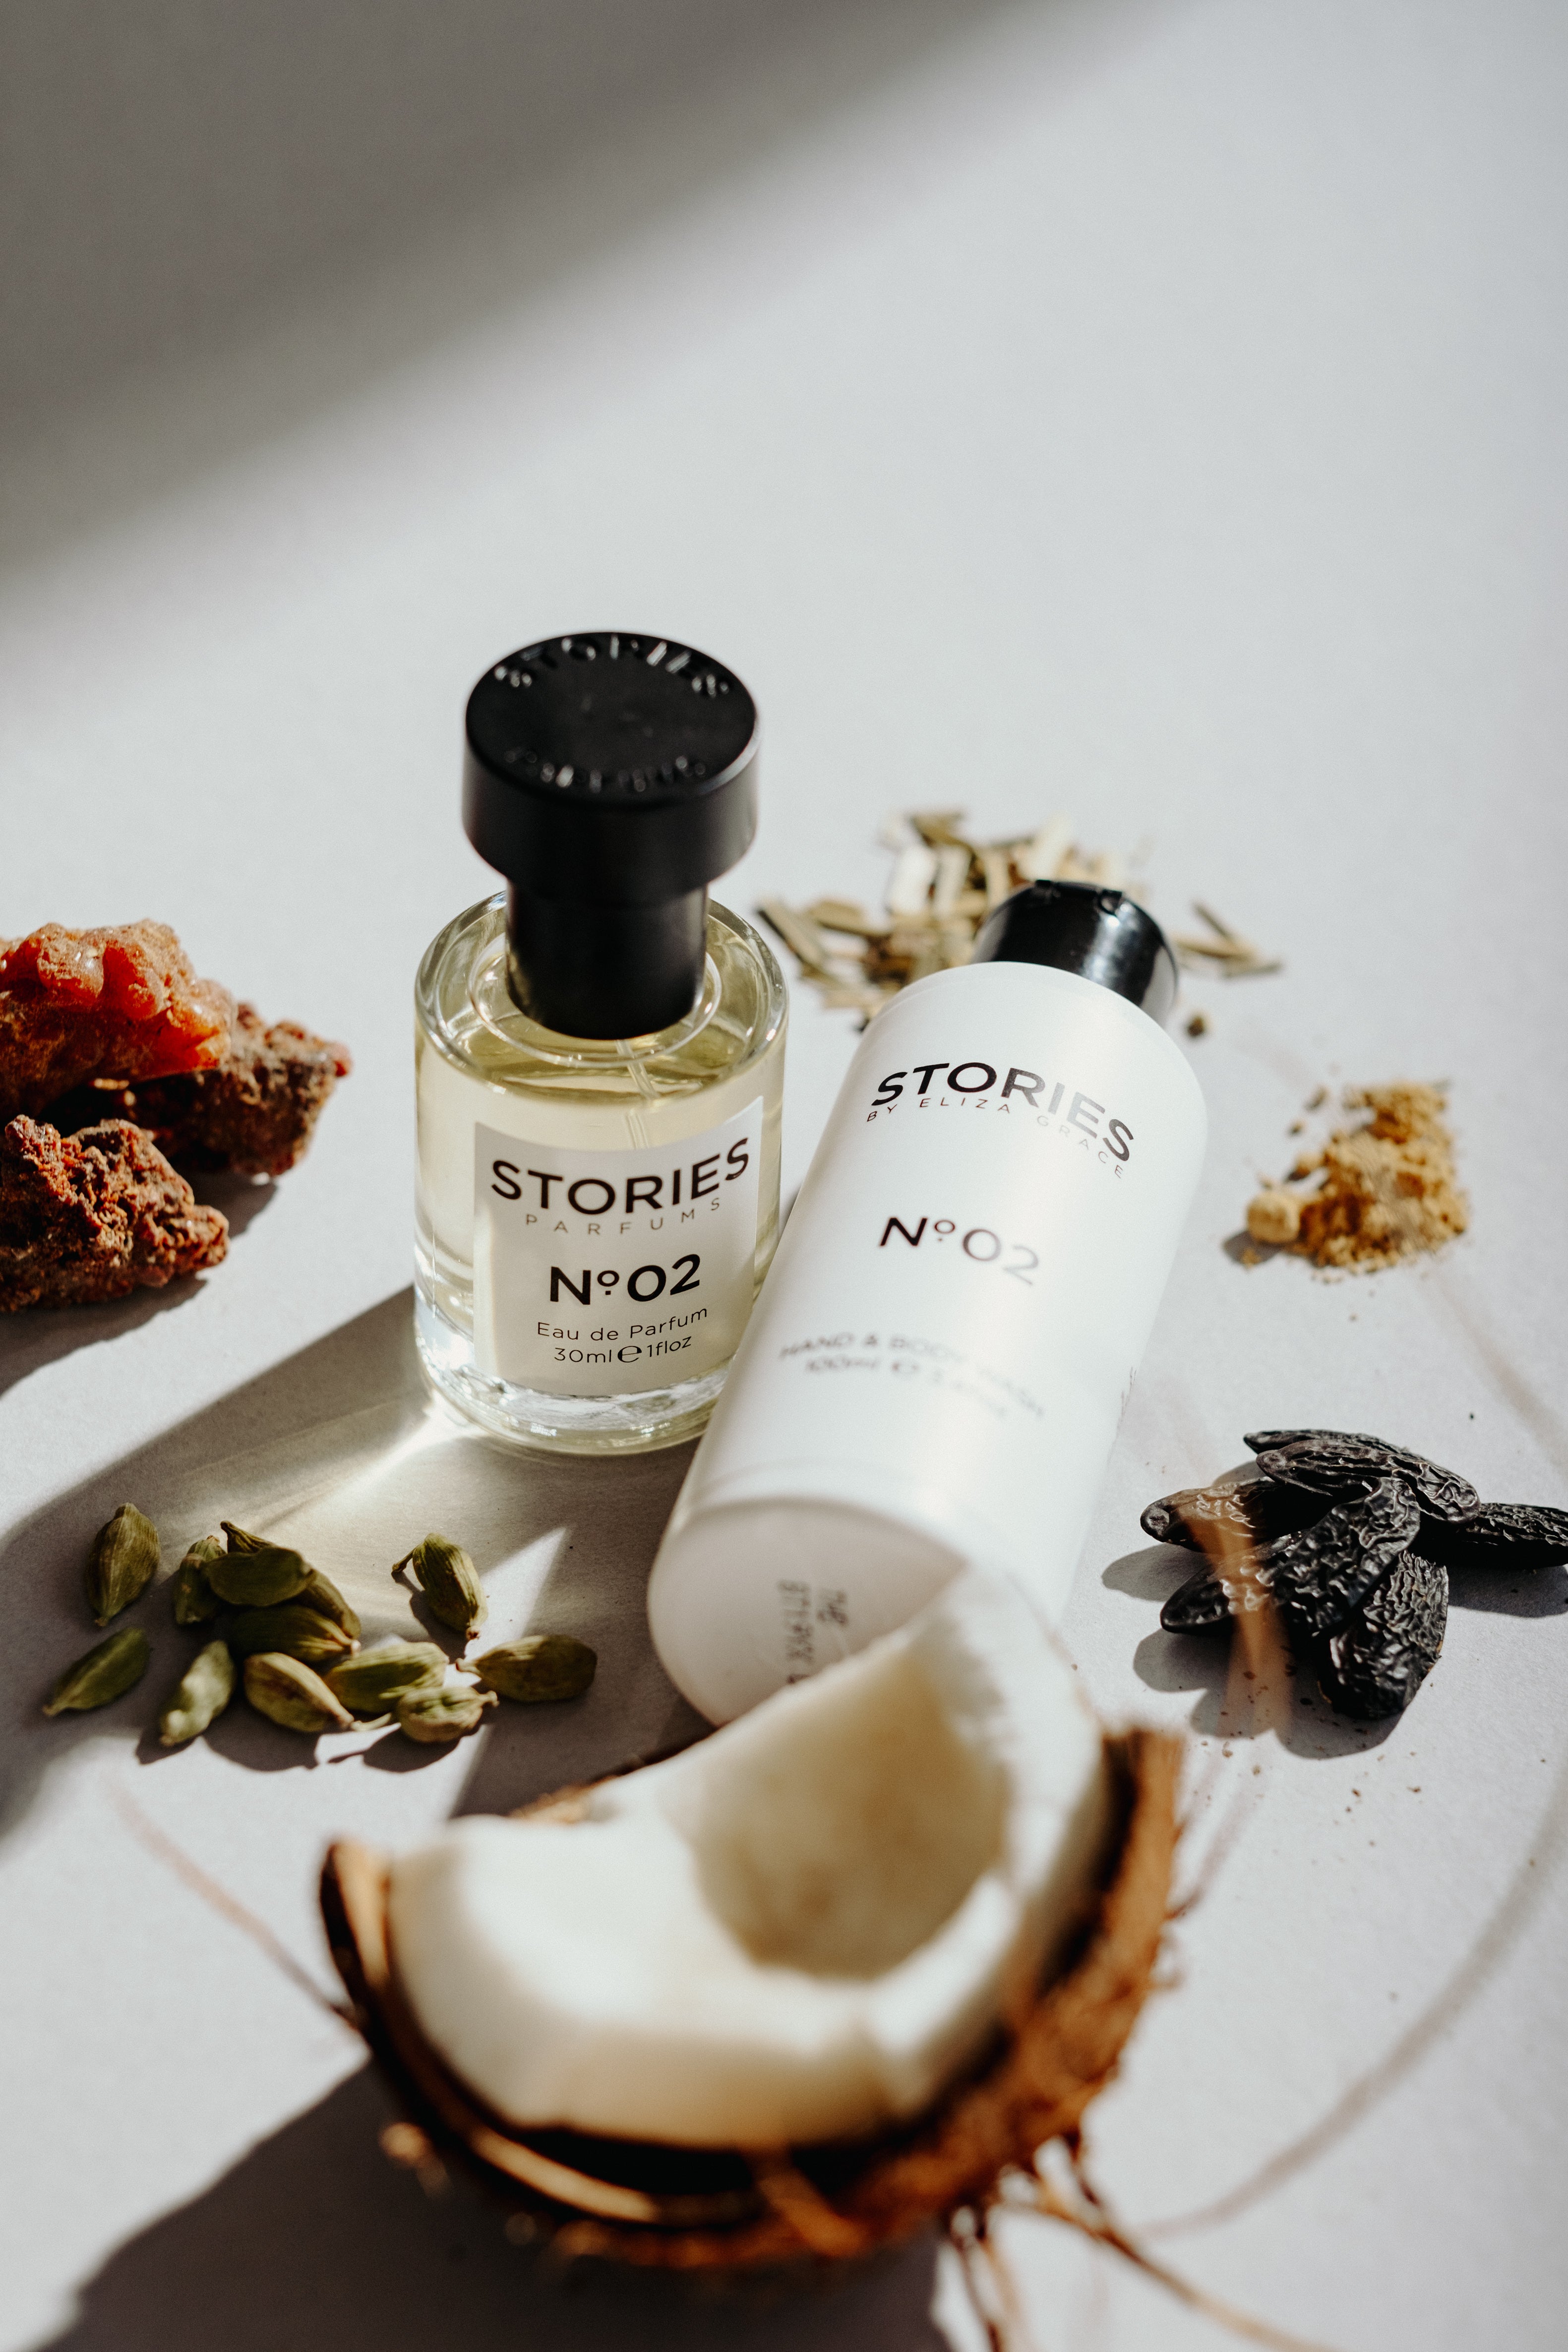 STORIES Parfums ingredients